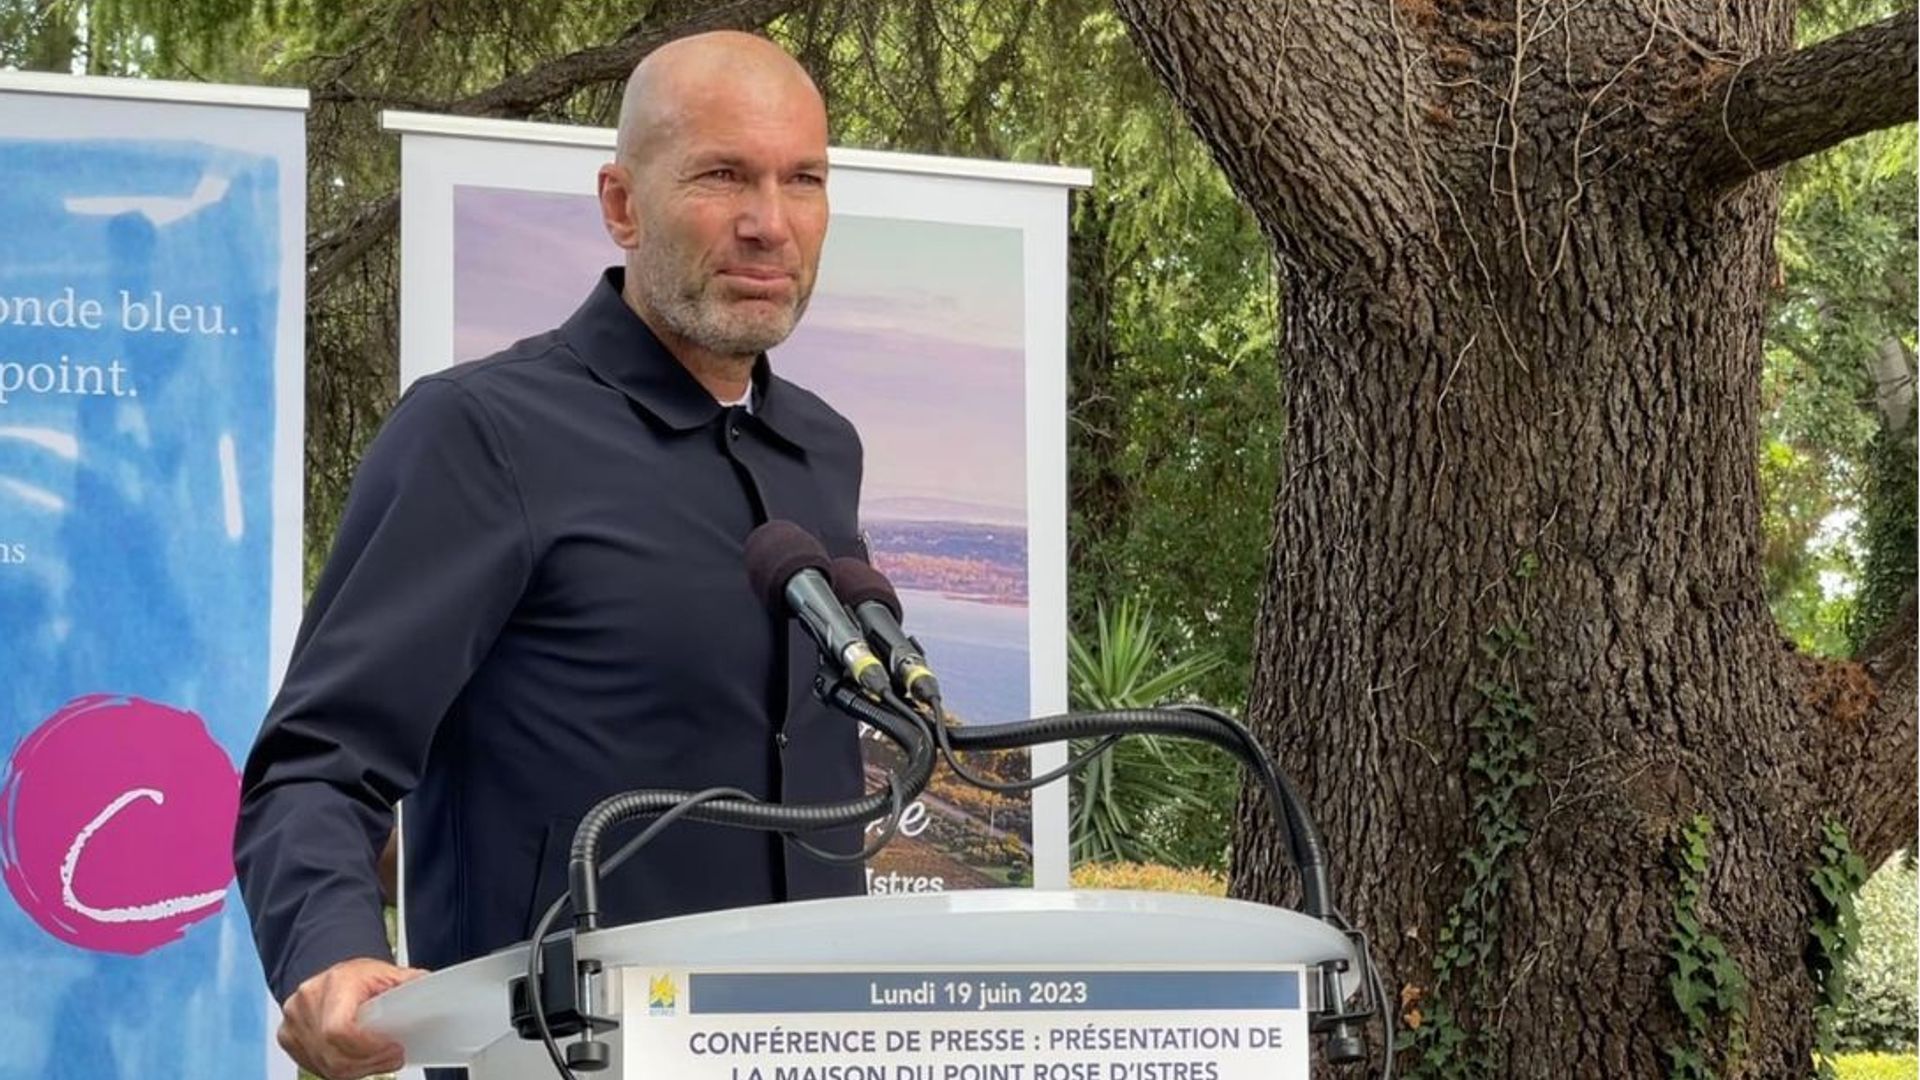 Le père de Zidane victime d’une rumeur insensée sur les réseaux sociaux